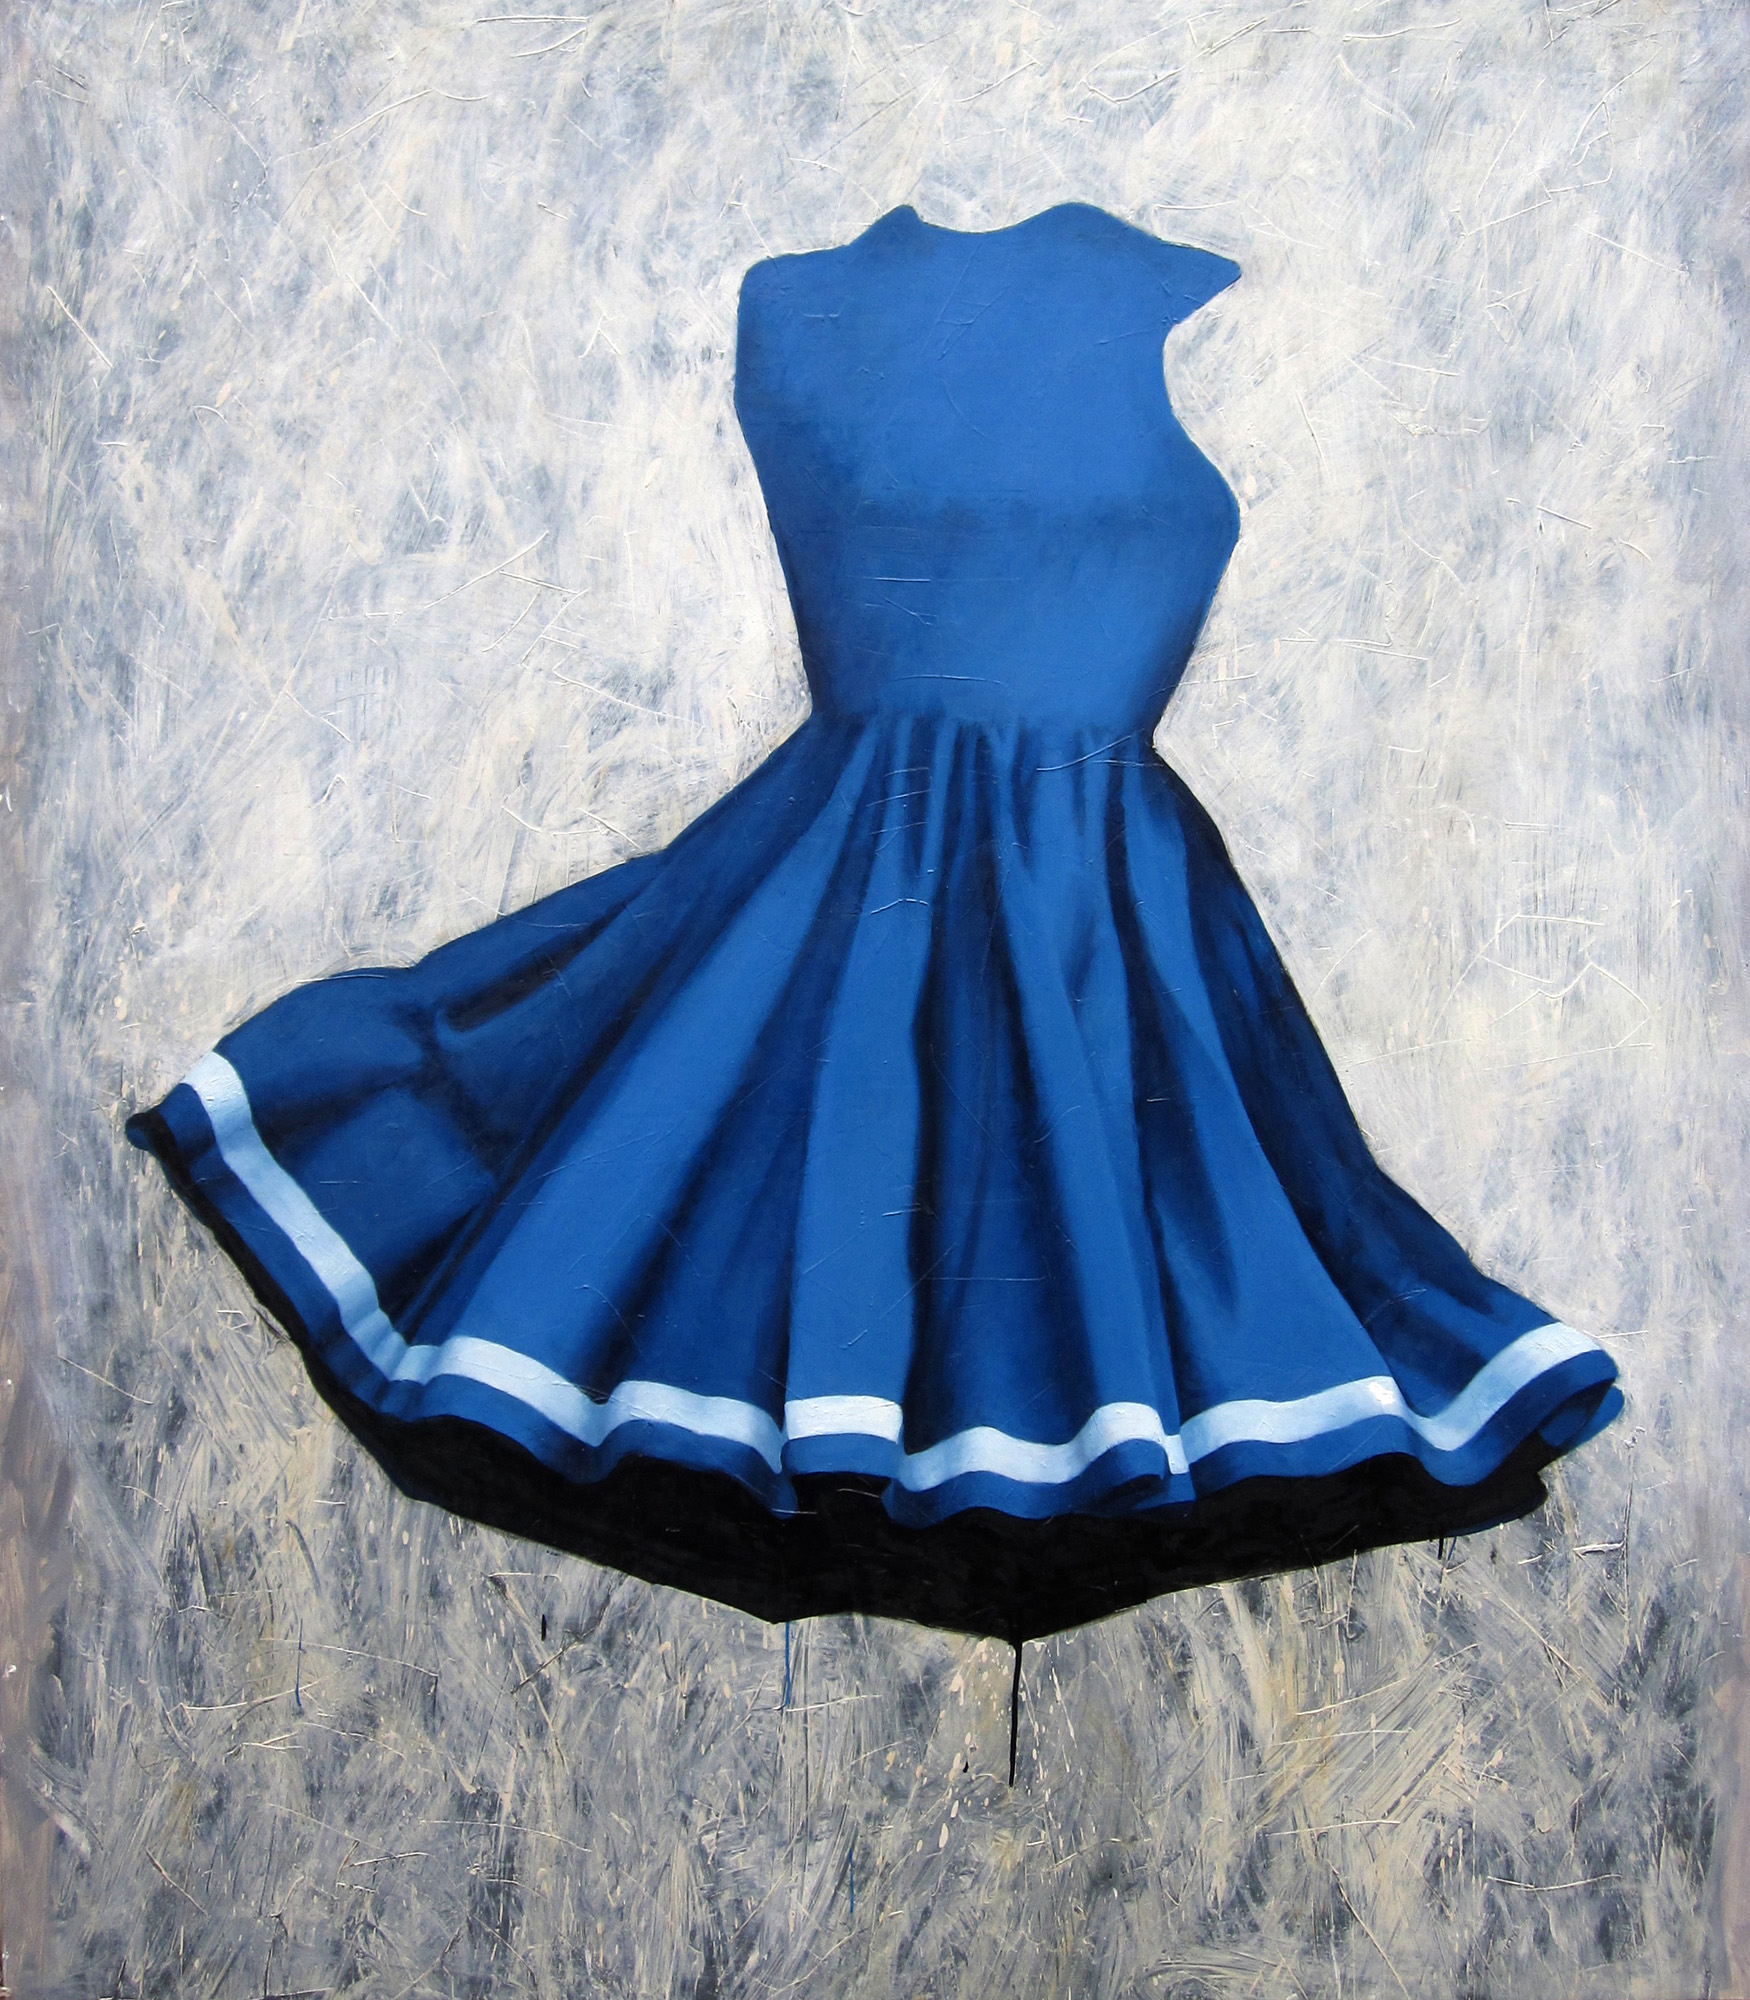 branislav_nikolic_paintings_blue_dress